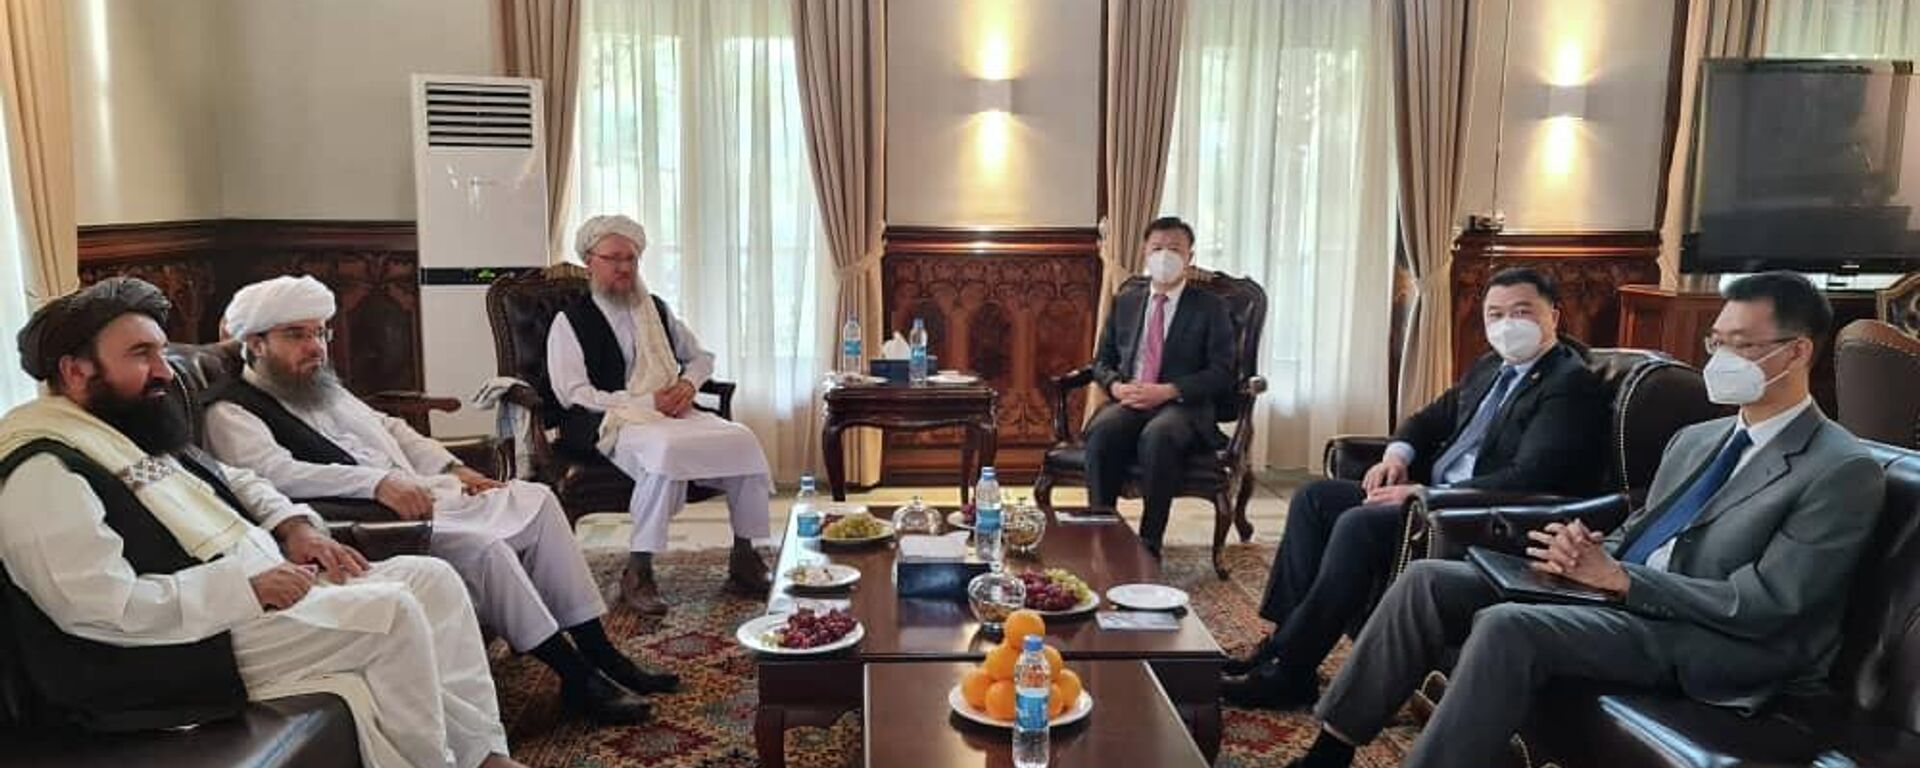 Первая официальная встреча талибов и китайских представителей в Кабуле - Sputnik Тоҷикистон, 1920, 07.09.2021